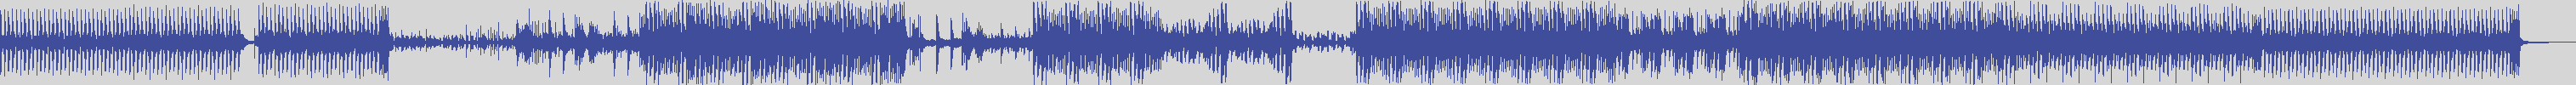 nf_boyz_records [NFY039] Vincent Lace - Caliente [Original Mix] audio wave form